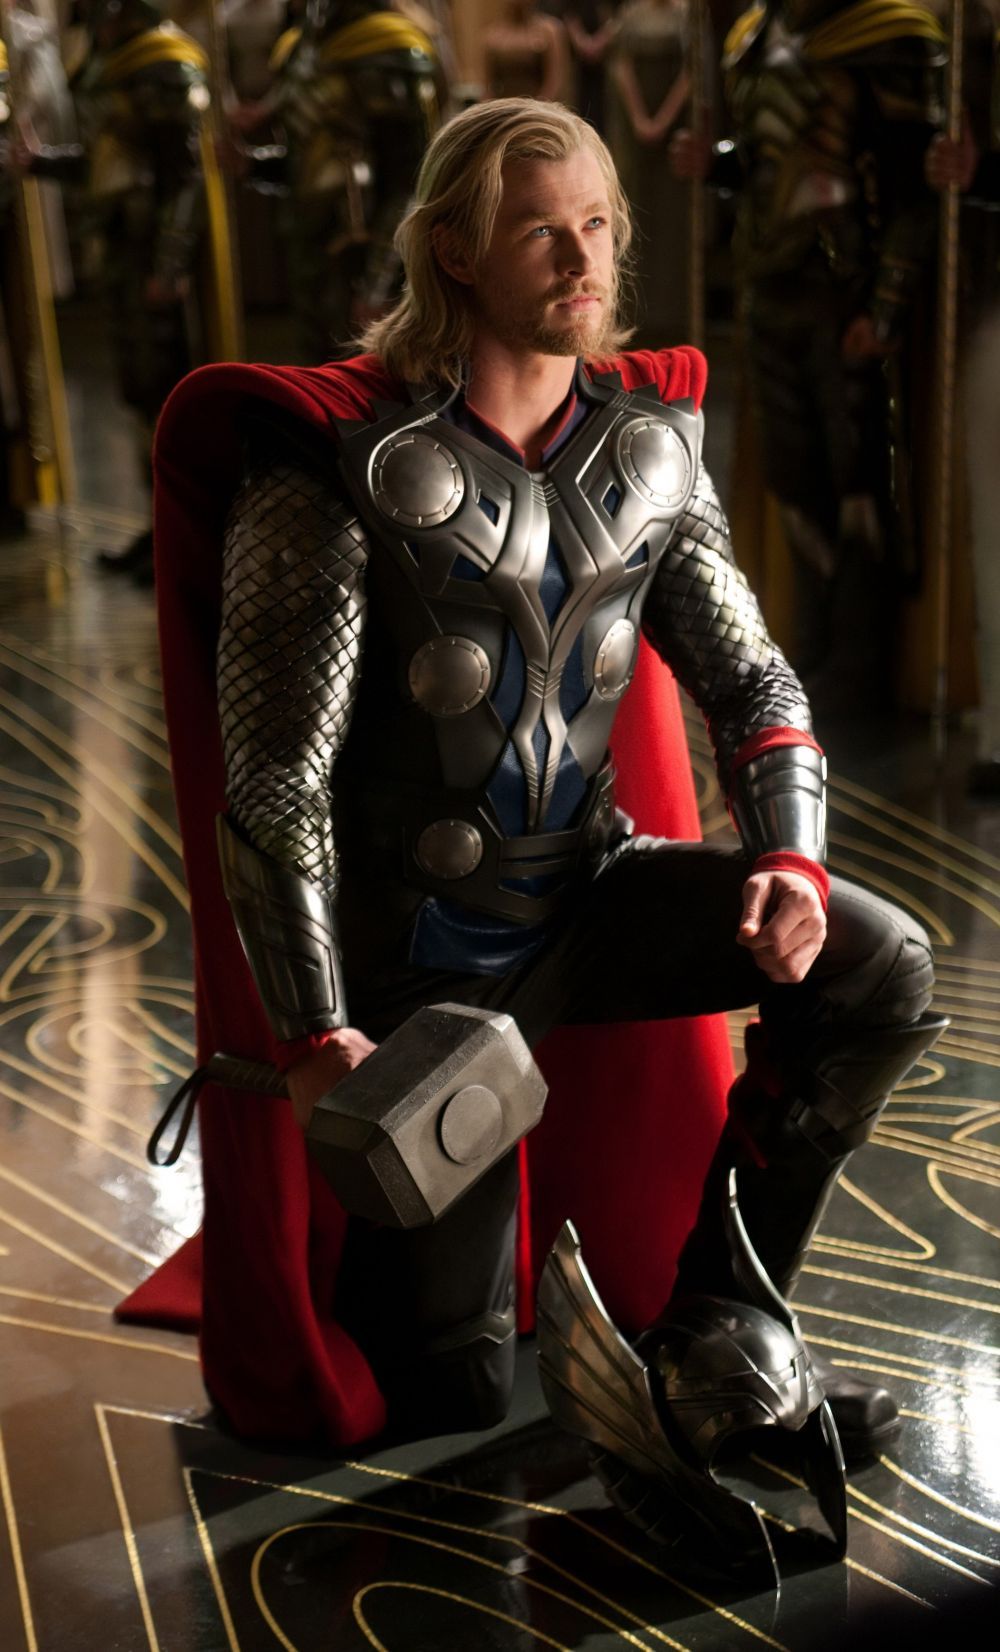 Thor exista cu adevarat :) Cine este zeul nordic care face furori pe Instagram si pe care il vaneaza mii de femei